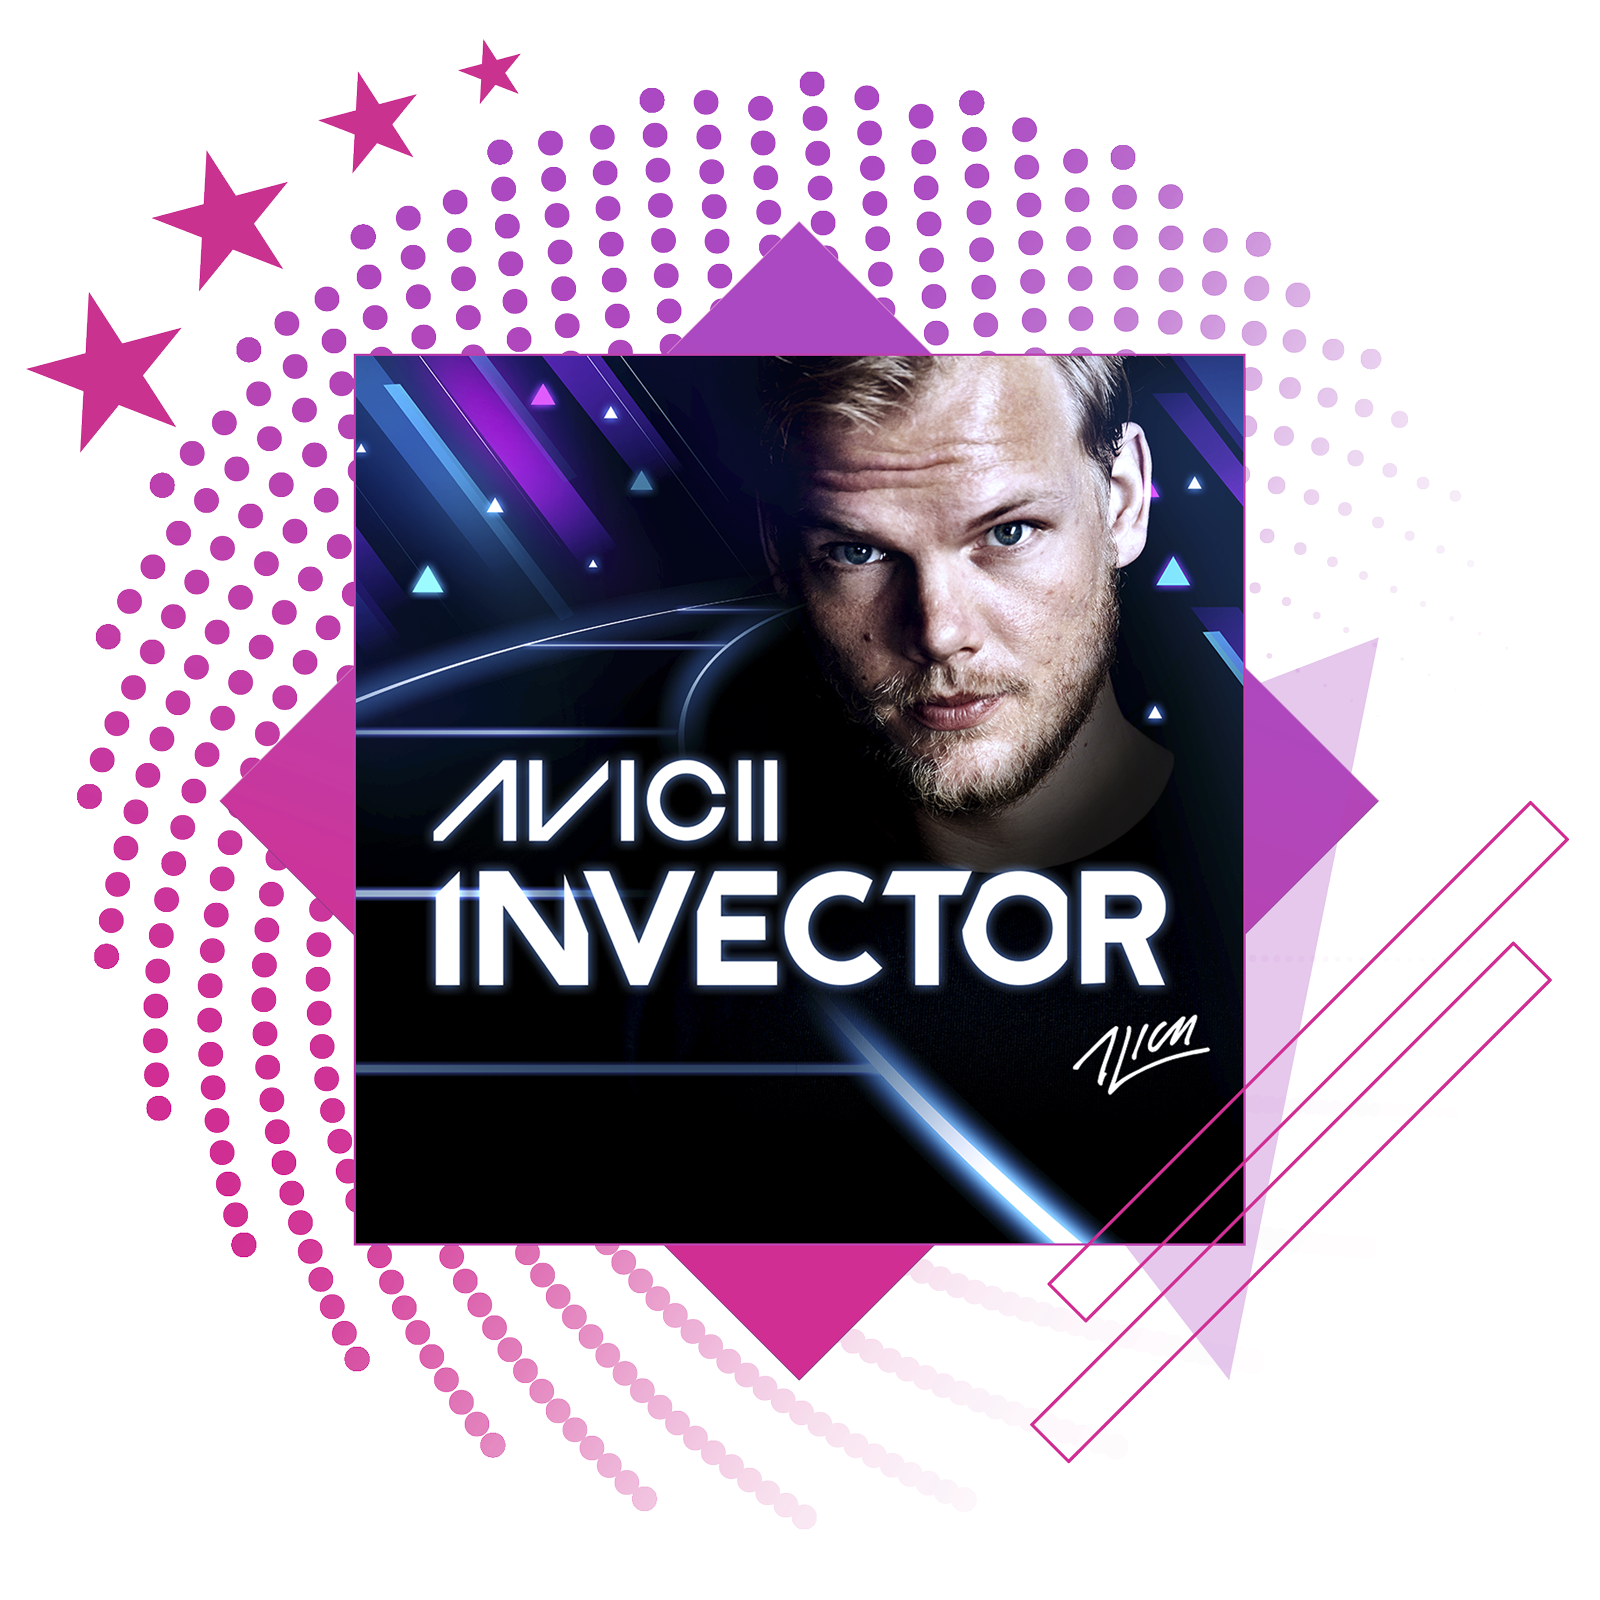 Parhaat rytmipelit -esittelyn kuva, jossa promokuvitusta pelistä Avicii: Invector.